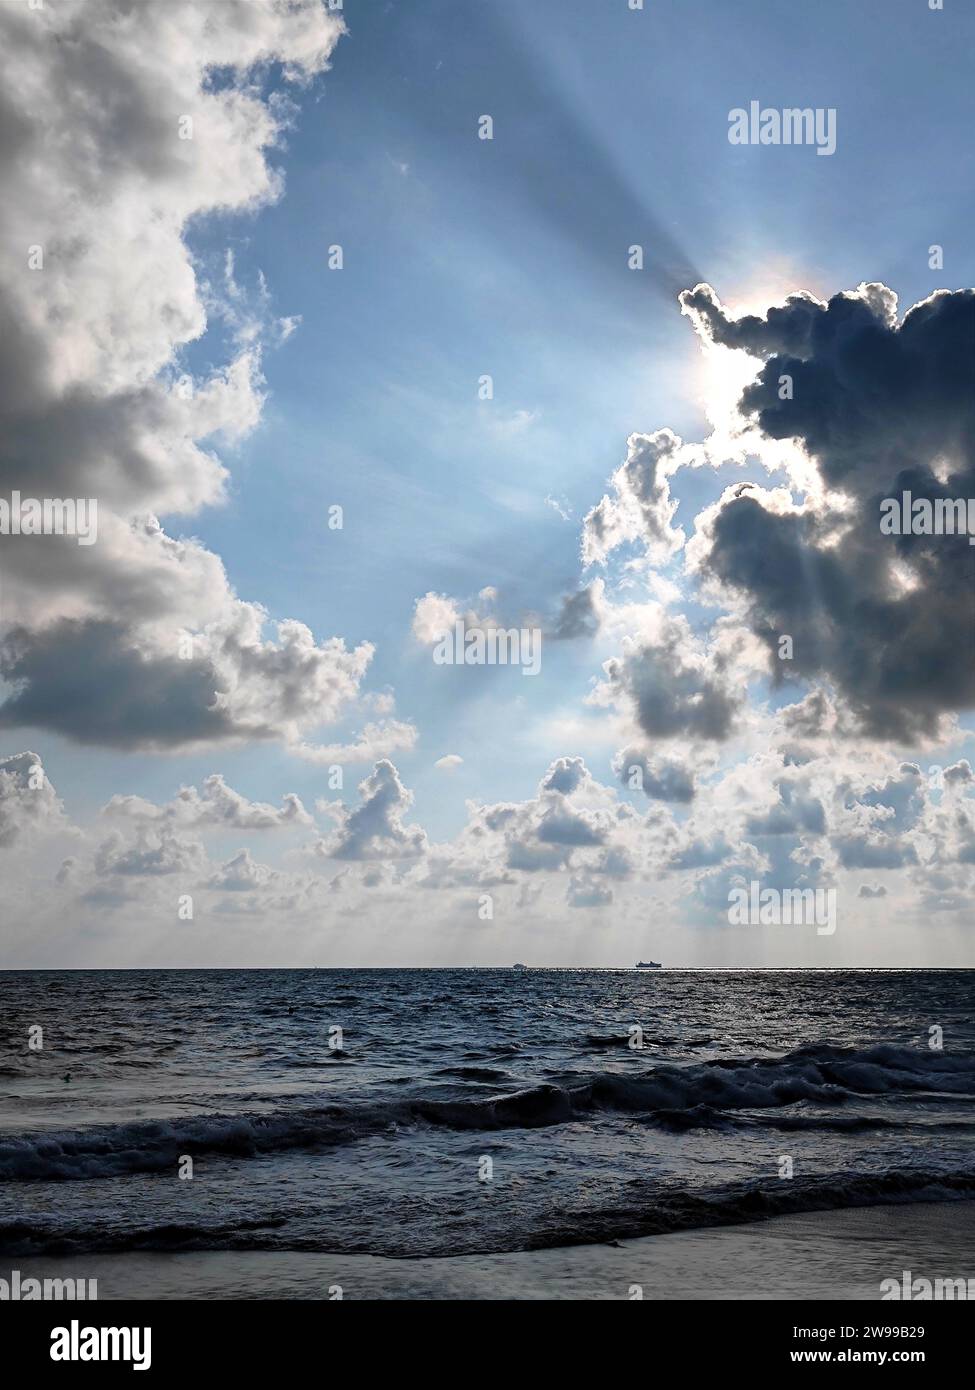 Ein ätherisches Bild eines ruhigen blauen Himmels mit einem Sonnenstrahl, der durch die Wolken strömt, beleuchtet über einem friedlichen Gewässer Stockfoto